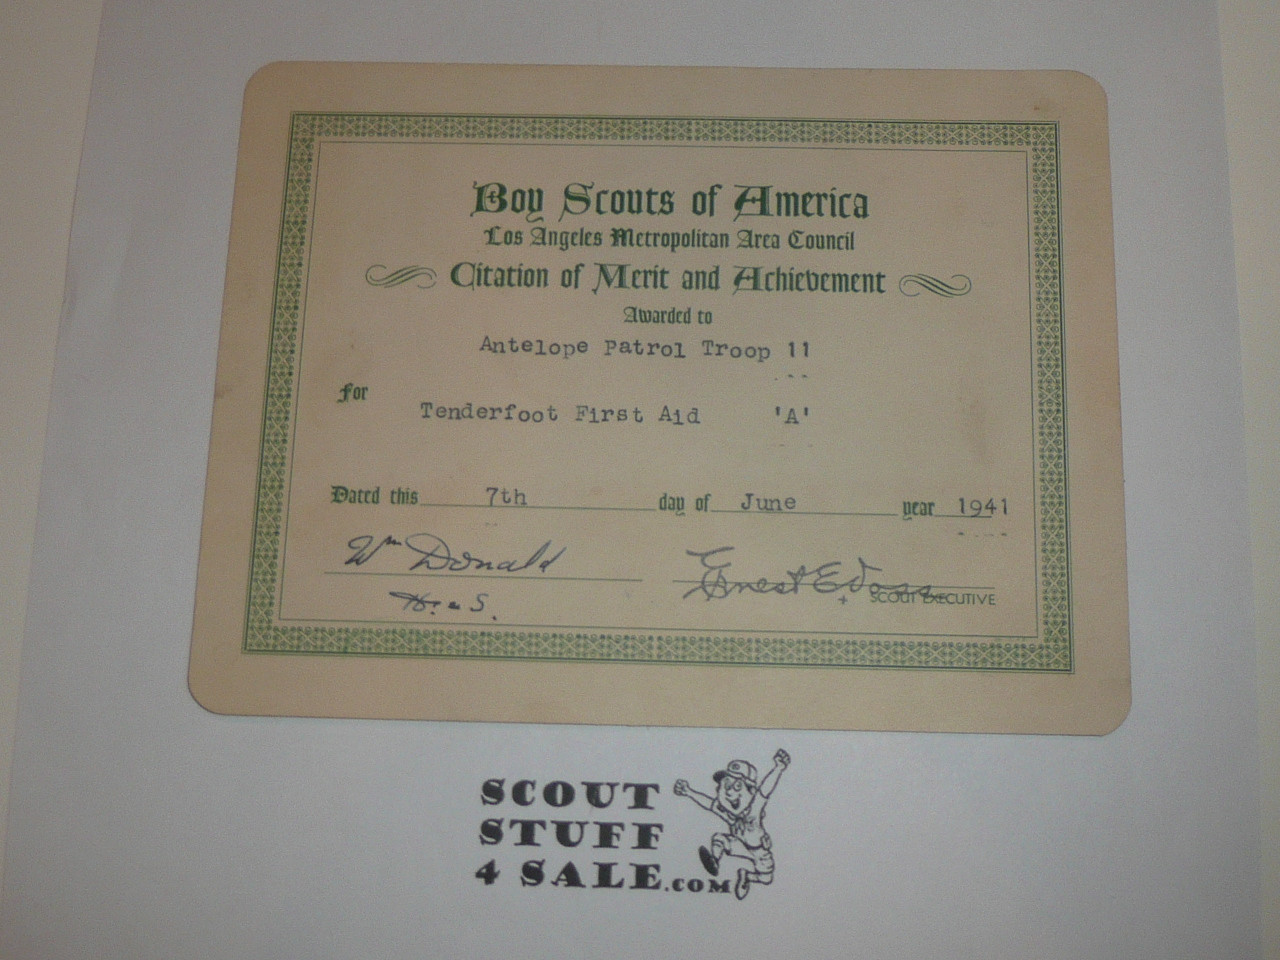 1941 Los Angeles Metropolitan Area Council Citation of Merit and Achievement Certificate